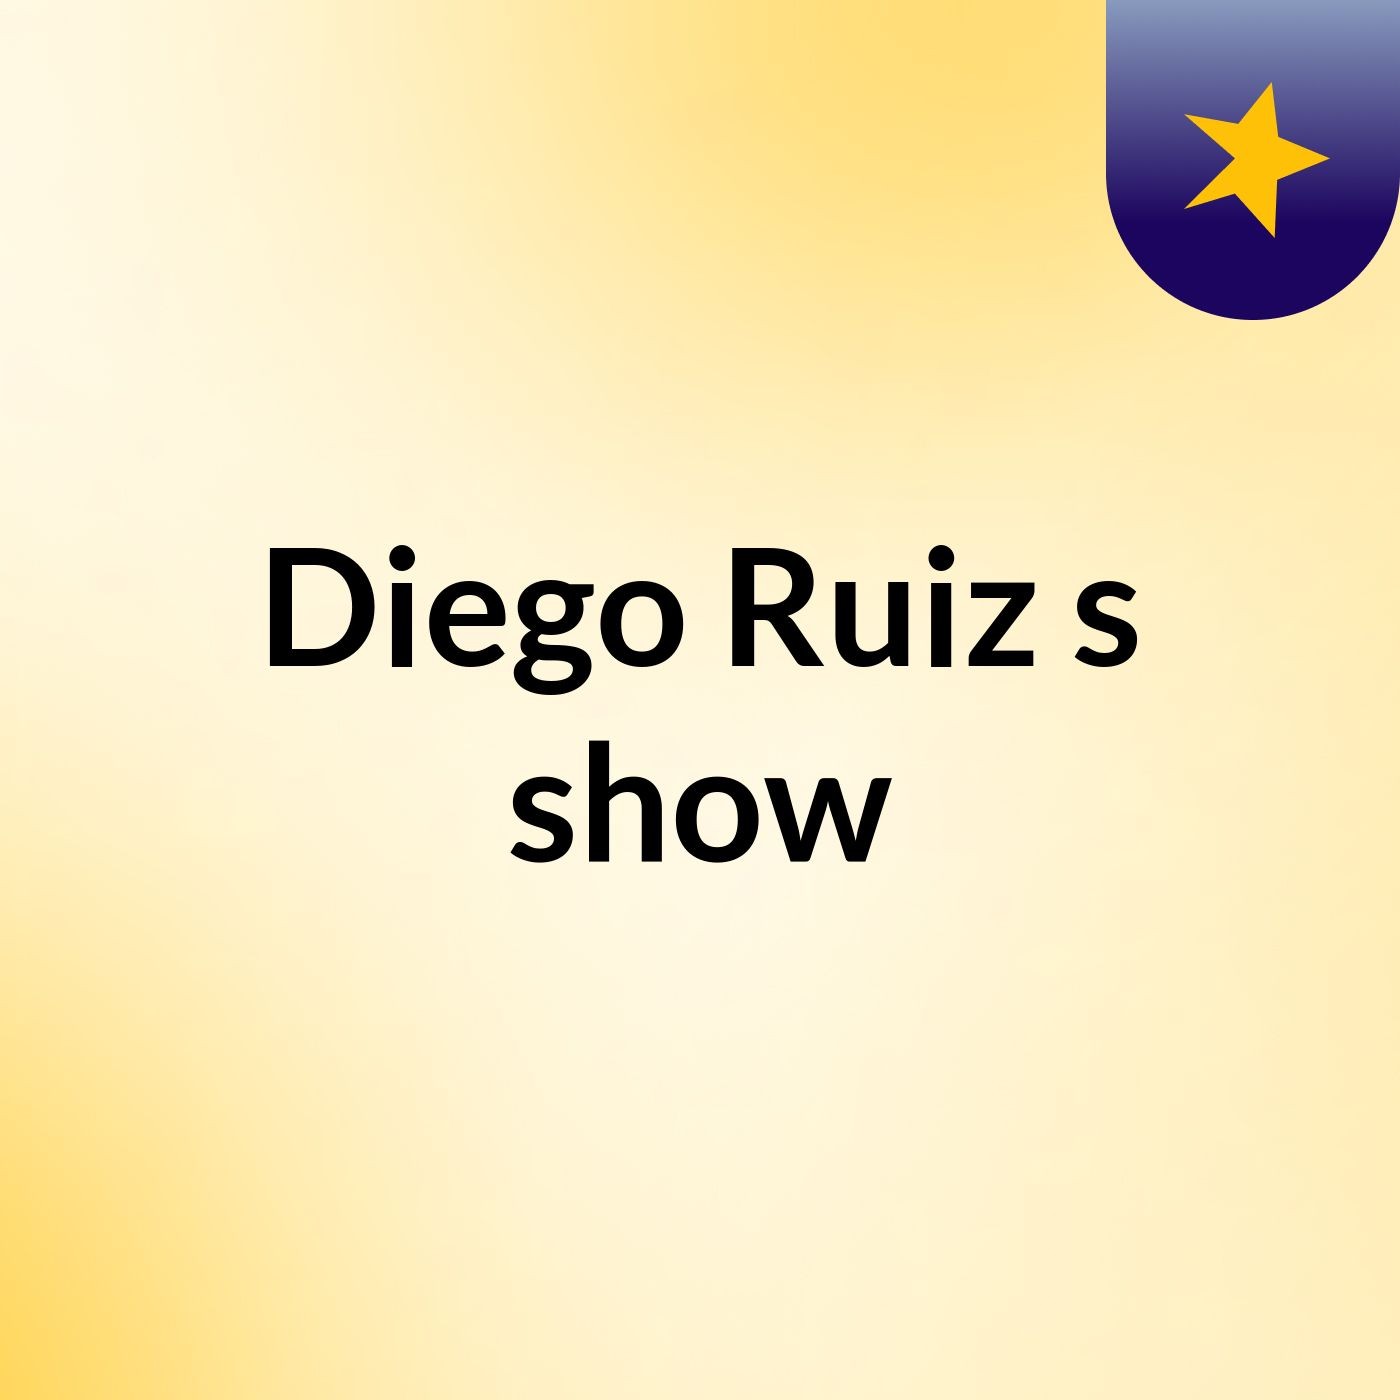 Diego Ruiz's show